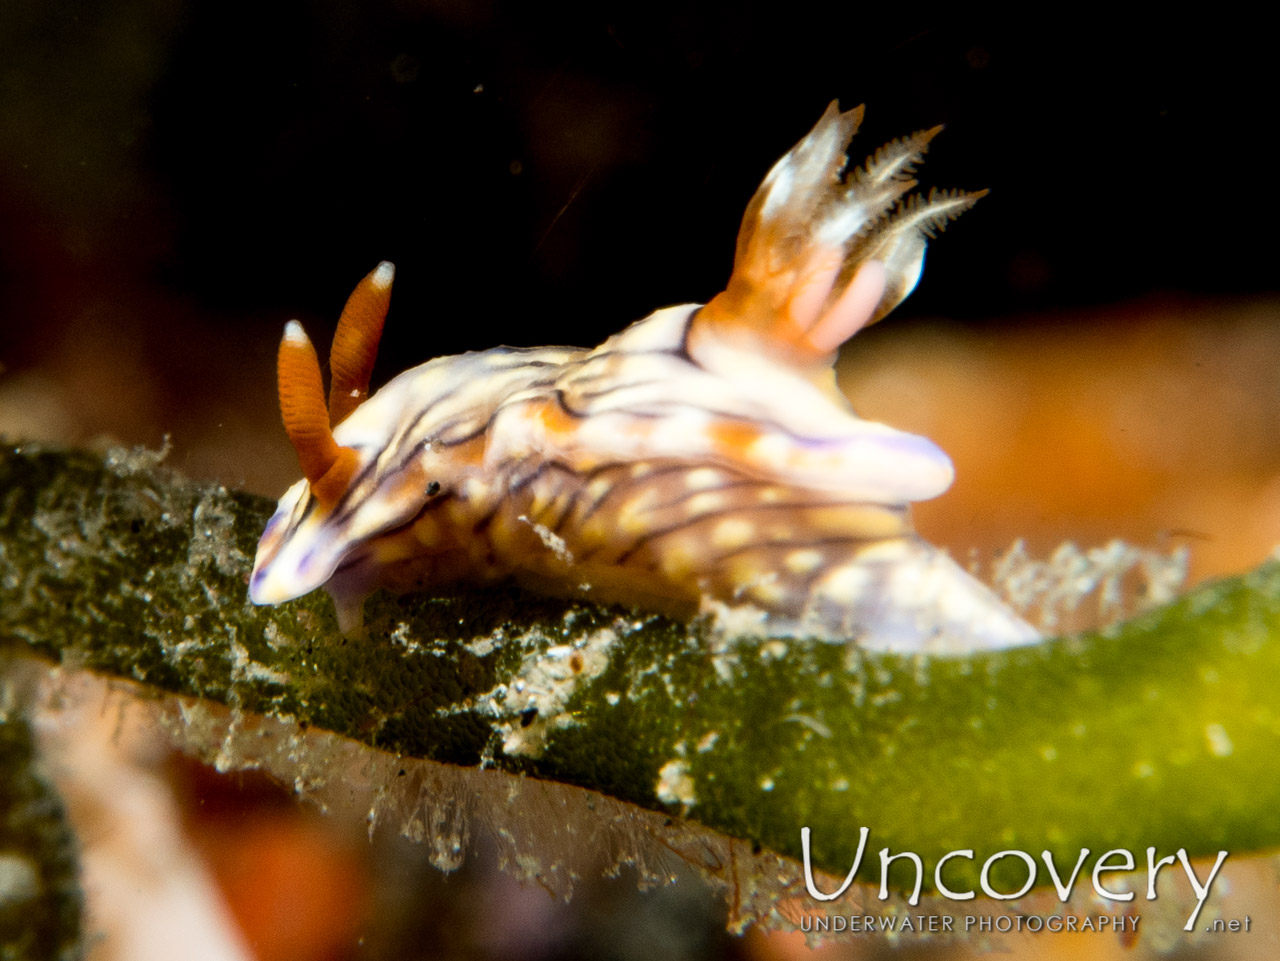 Nudibranch, photo taken in Indonesia, North Sulawesi, Lembeh Strait, Aer Prang 1